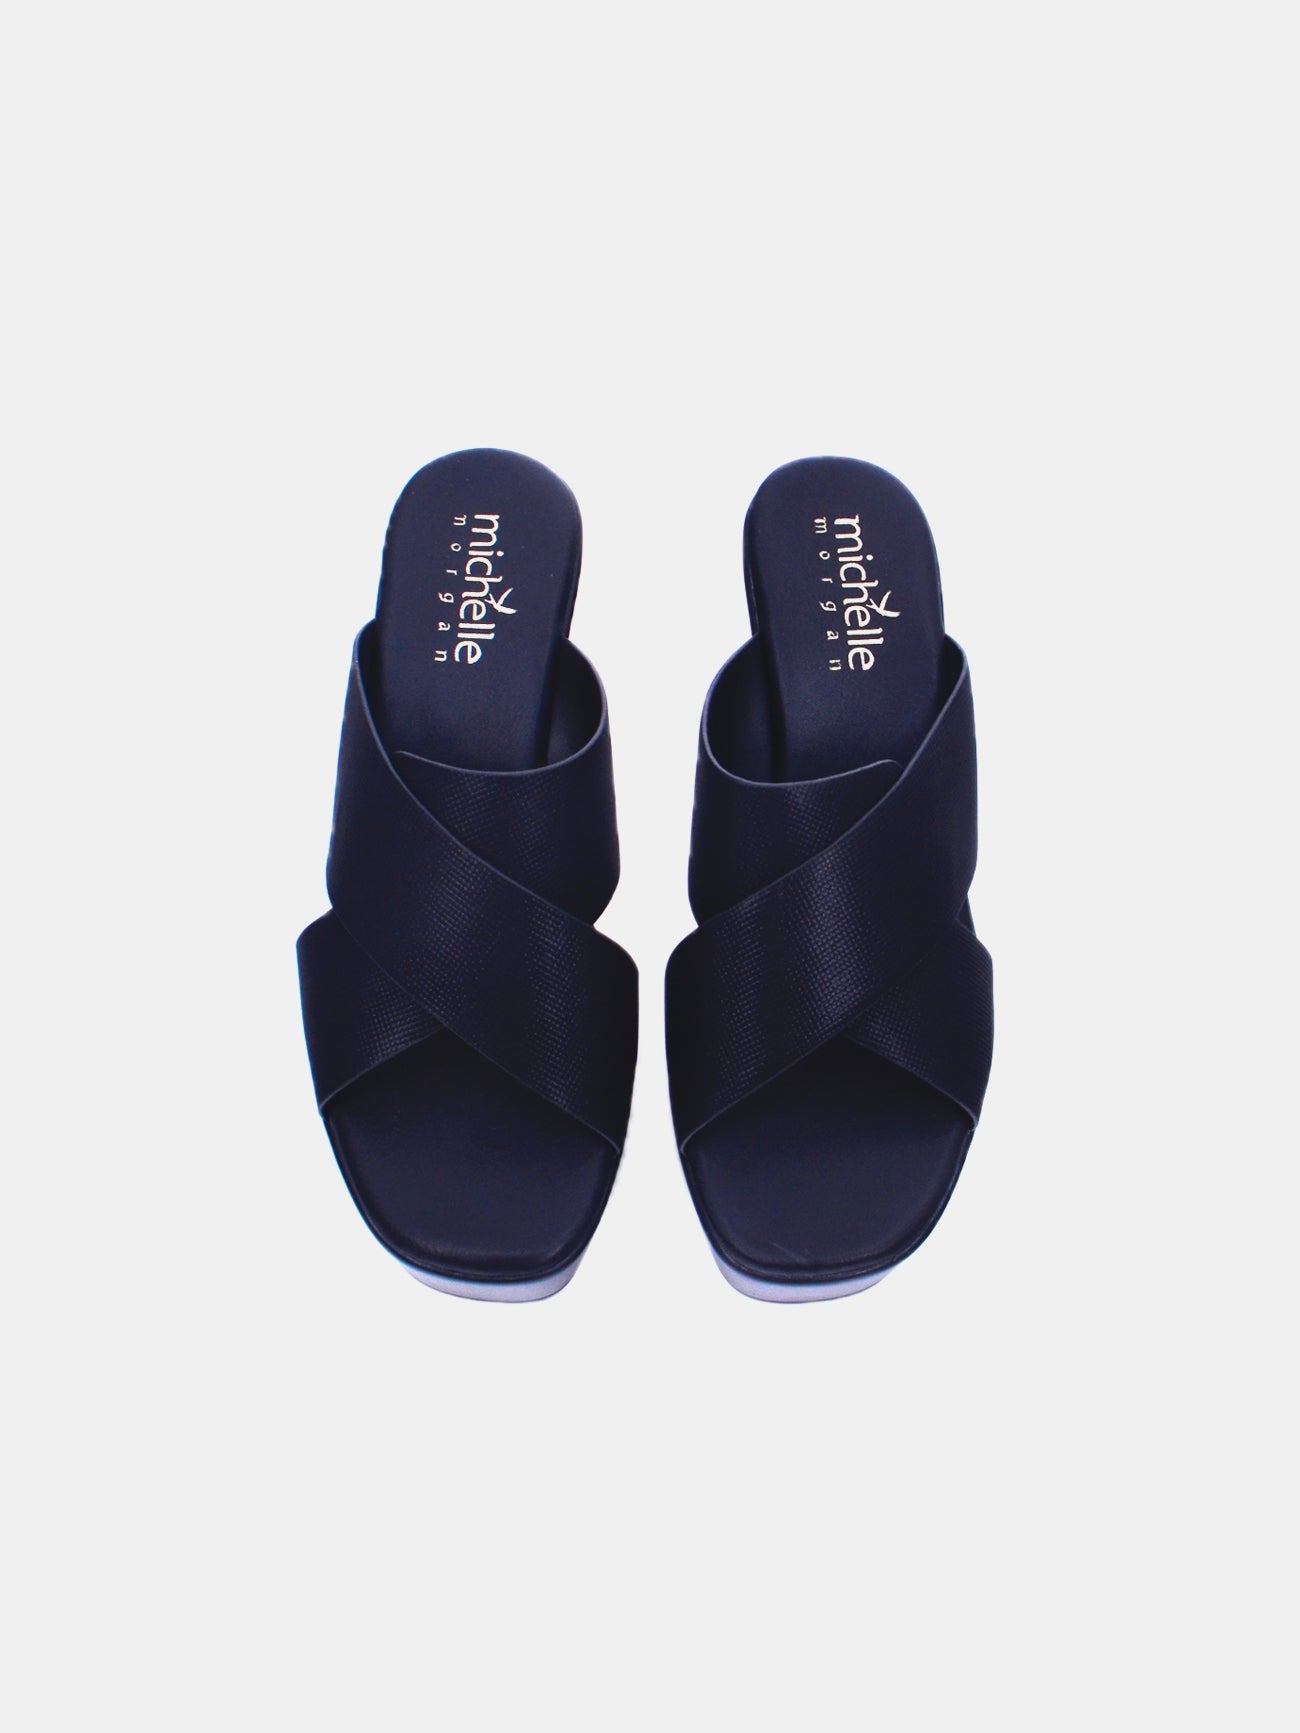 Michelle Morgan 014RJ853 Women's Heeled Sandals #color_Black